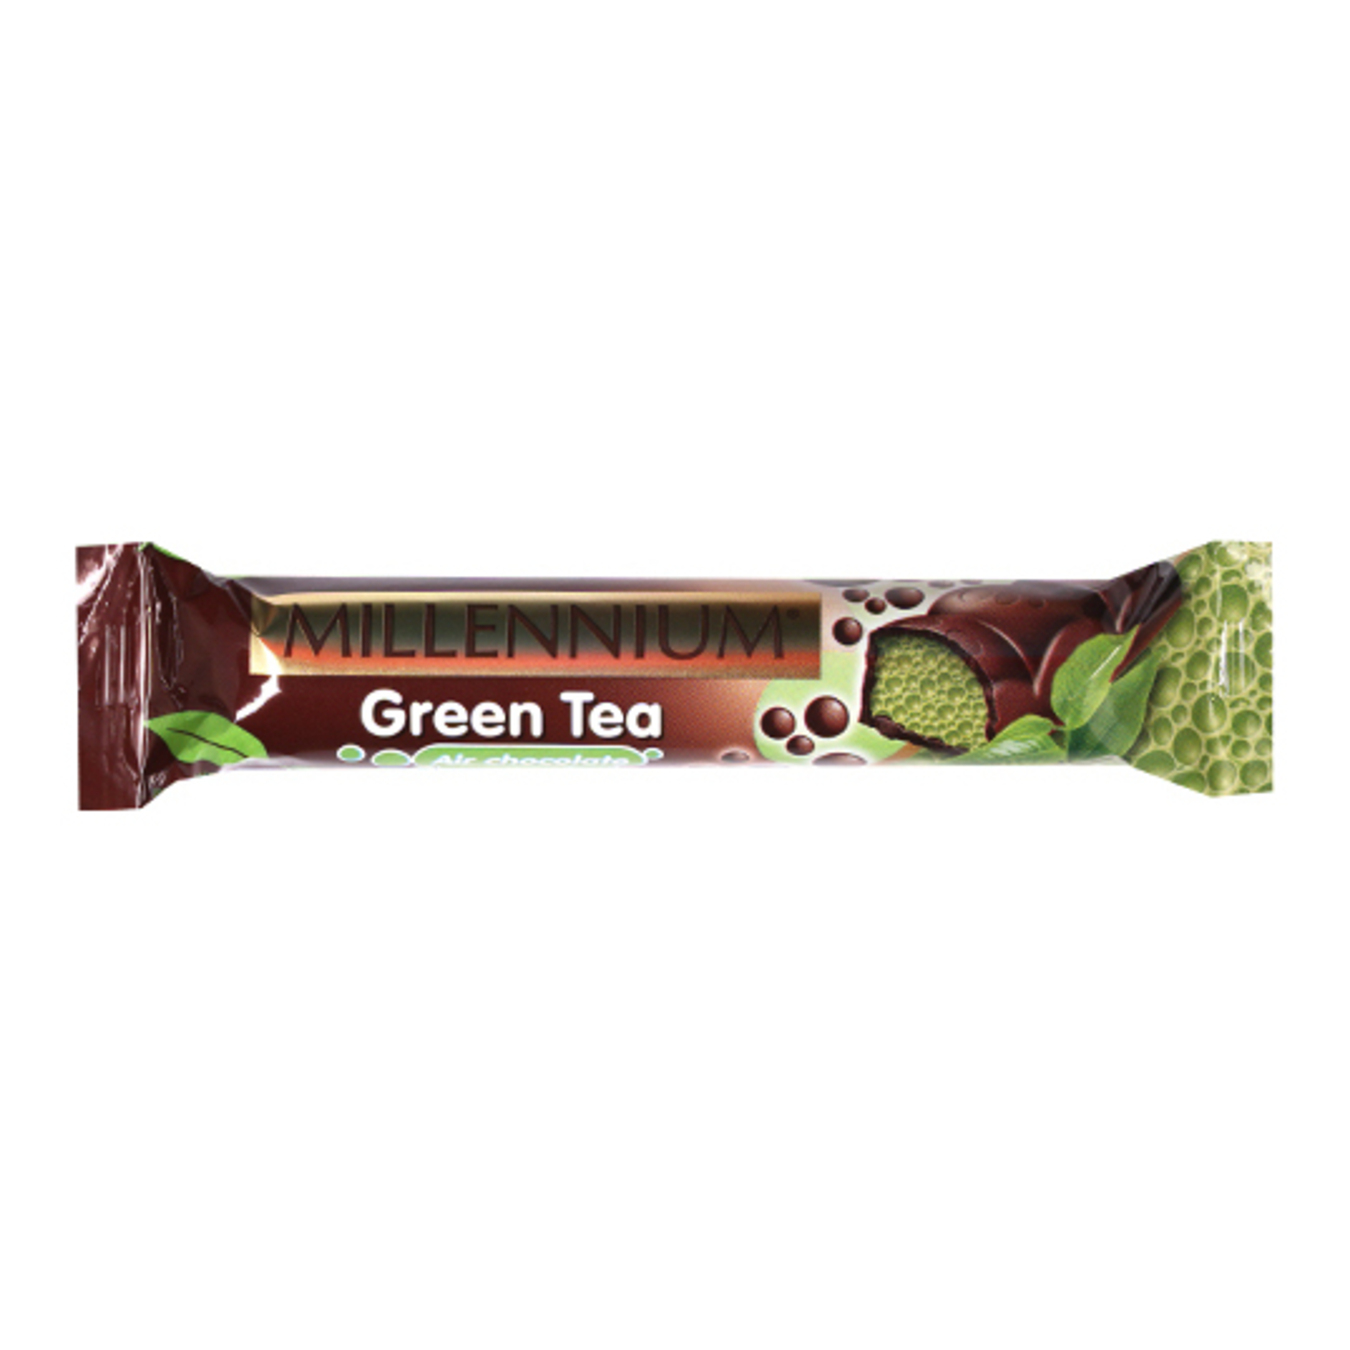 Millenium green tea aerated dark chocolate 32g